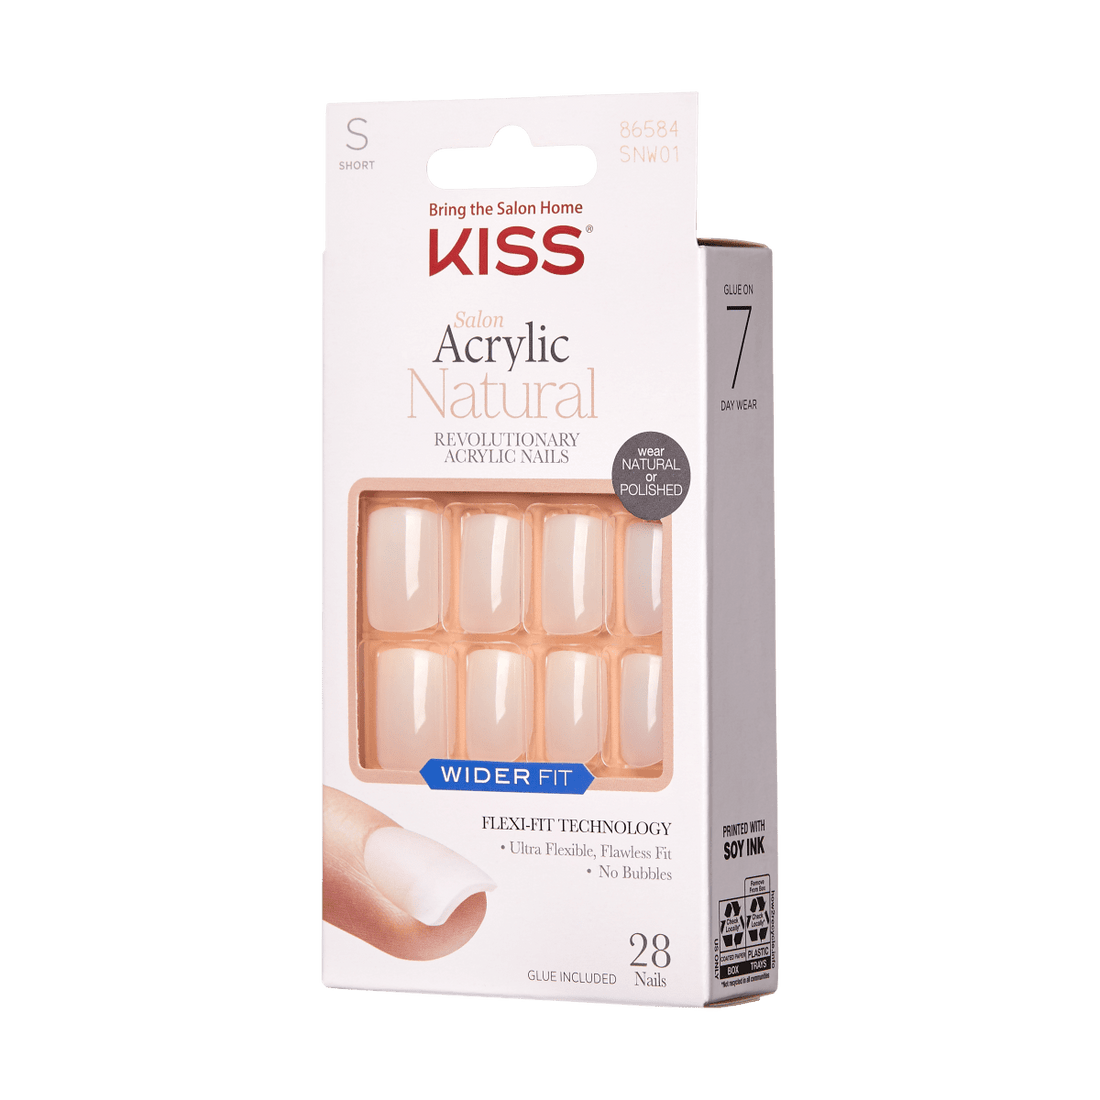 KISS SA Natural Nails - Rare, Wide Fit